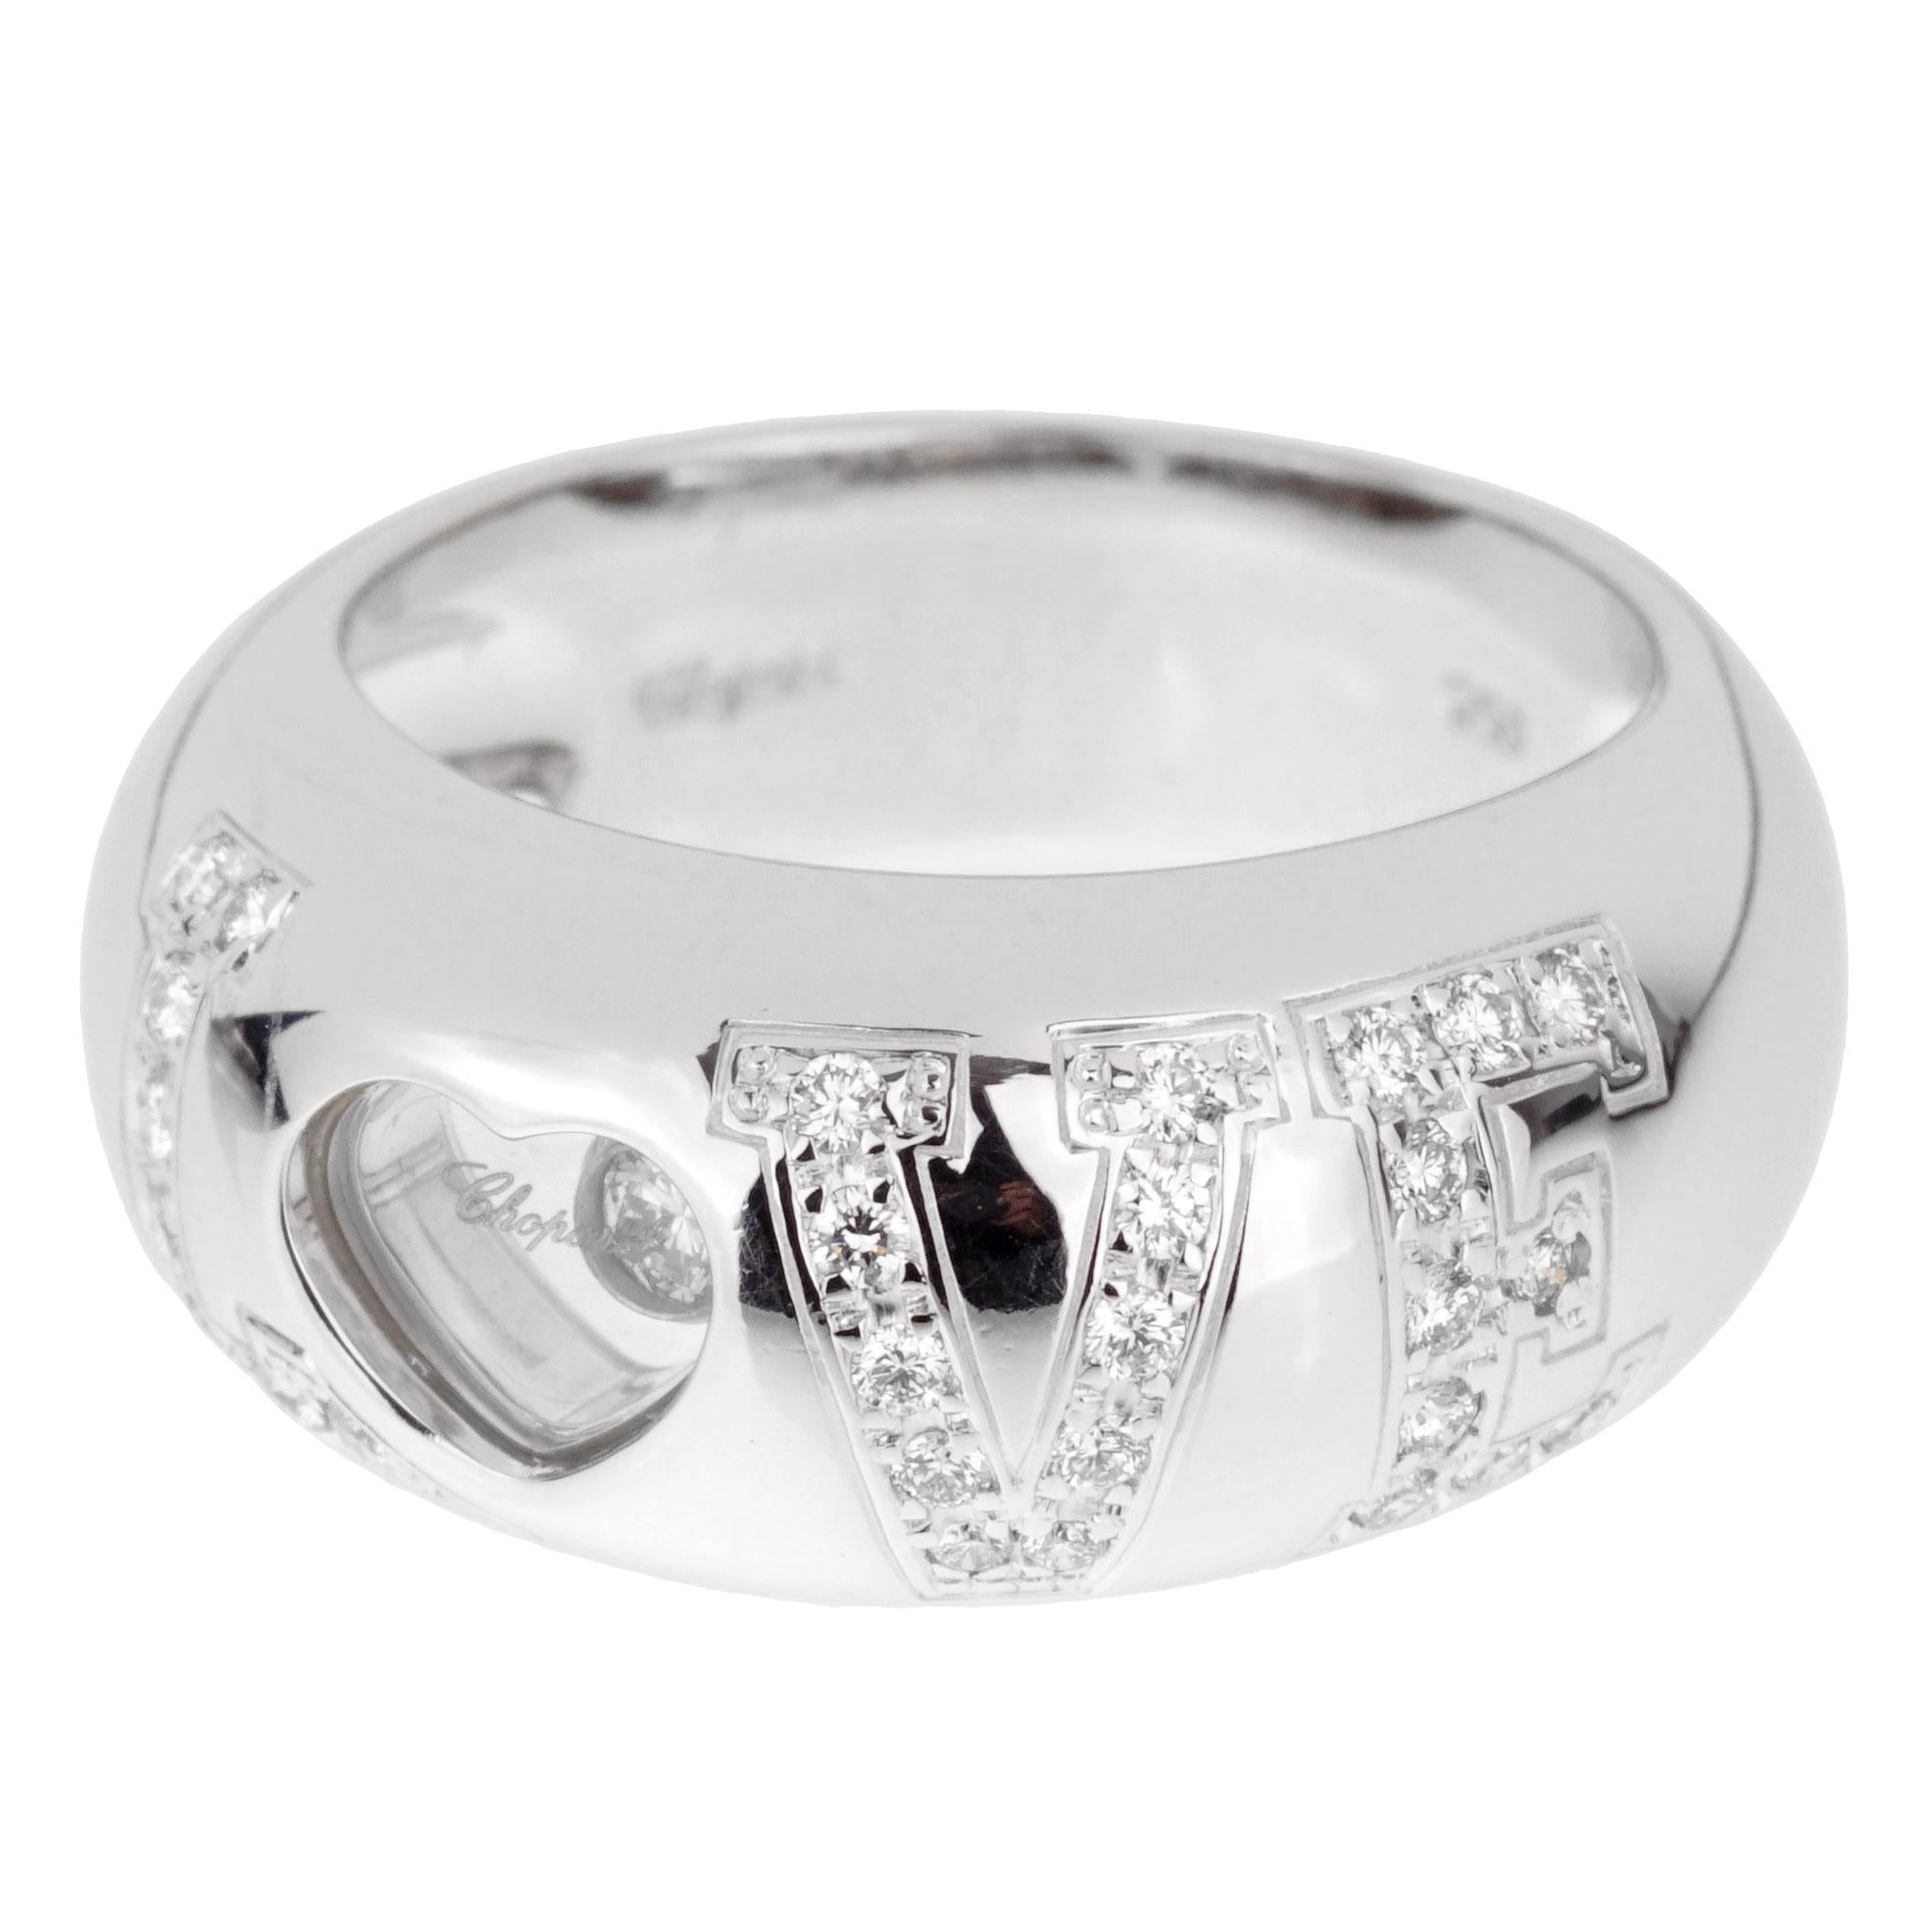 Ein fabelhafter Chopard Happy Diamond Ring mit runden Diamanten im Brillantschliff in schimmerndem 18-karätigem Weißgold. Der Ring hat die Größe 4 1/2 und kann in der Größe geändert werden.